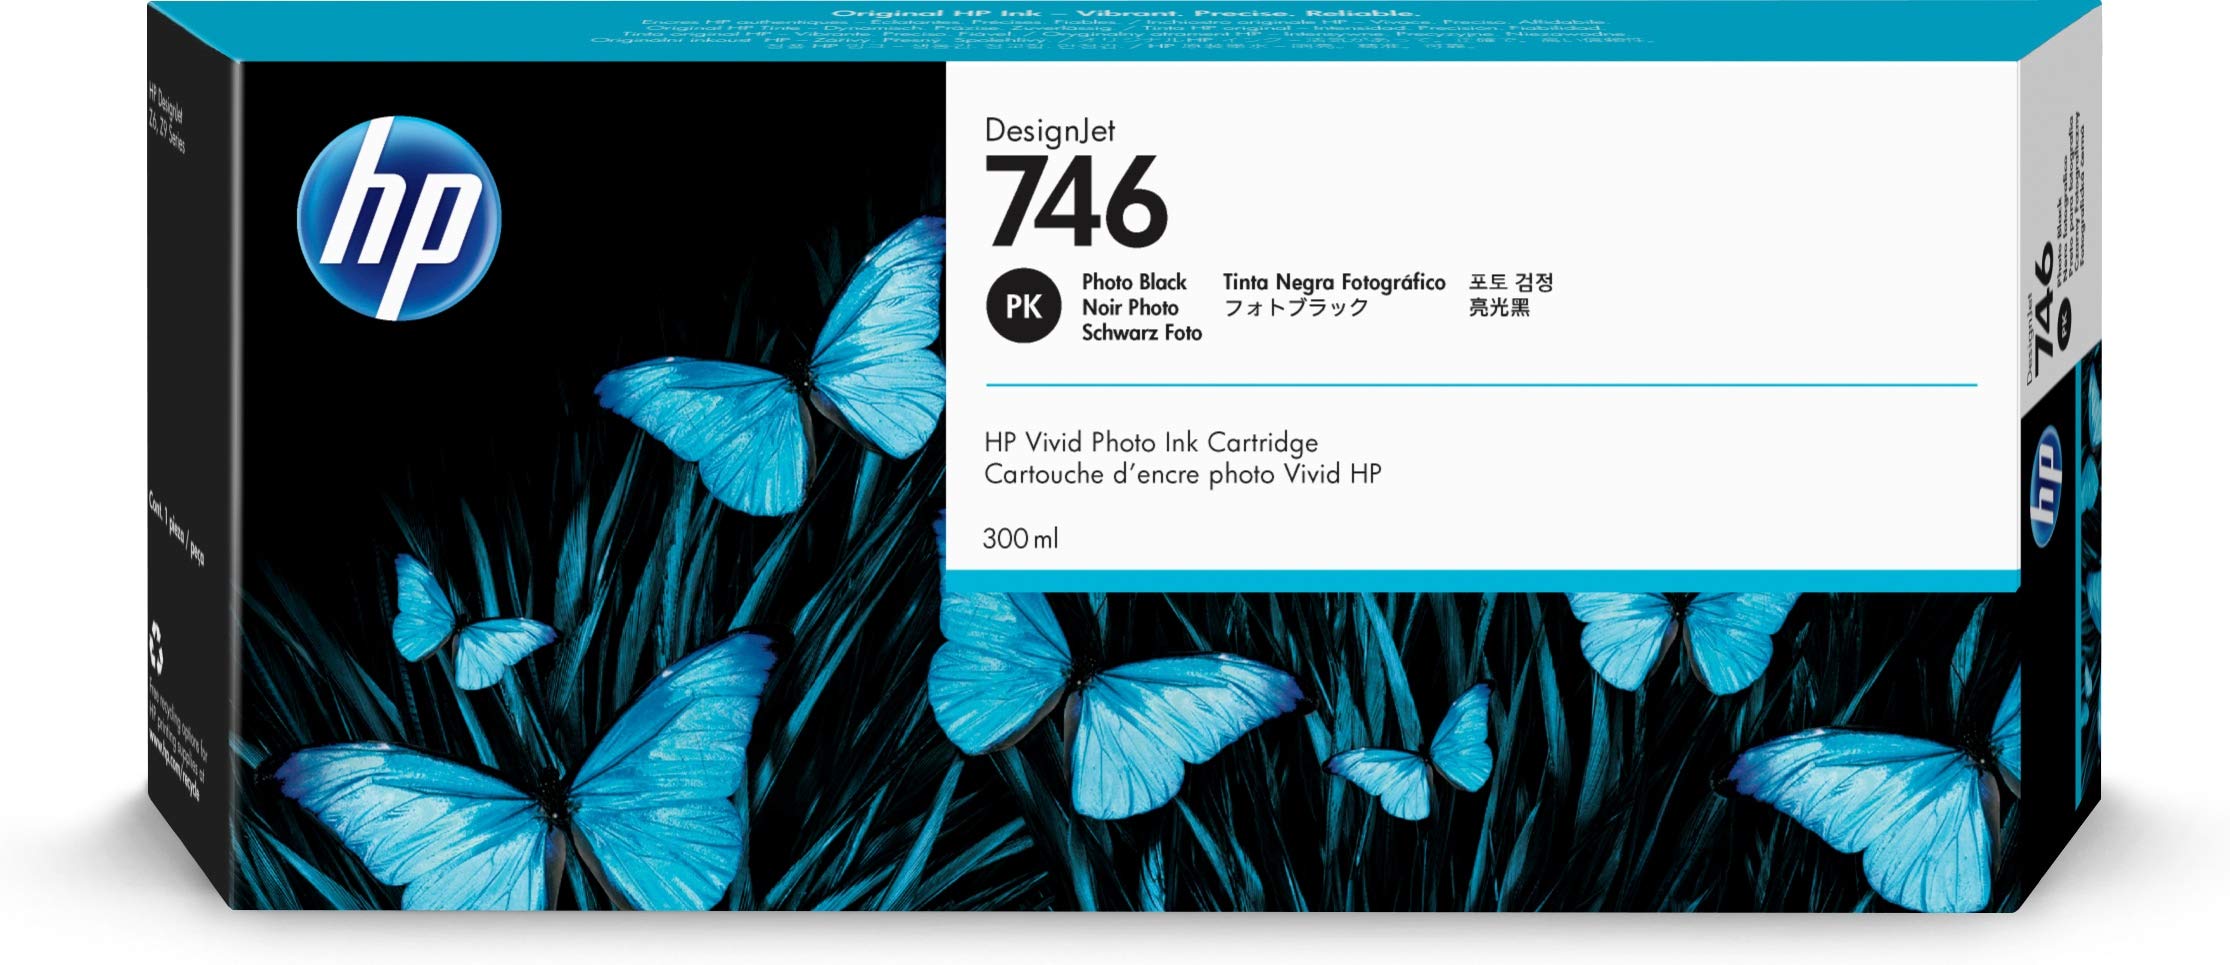 HP डिज़ाइनजेट Z6 और Z9+ बड़े प्रारूप प्रिंटर के लिए 746...